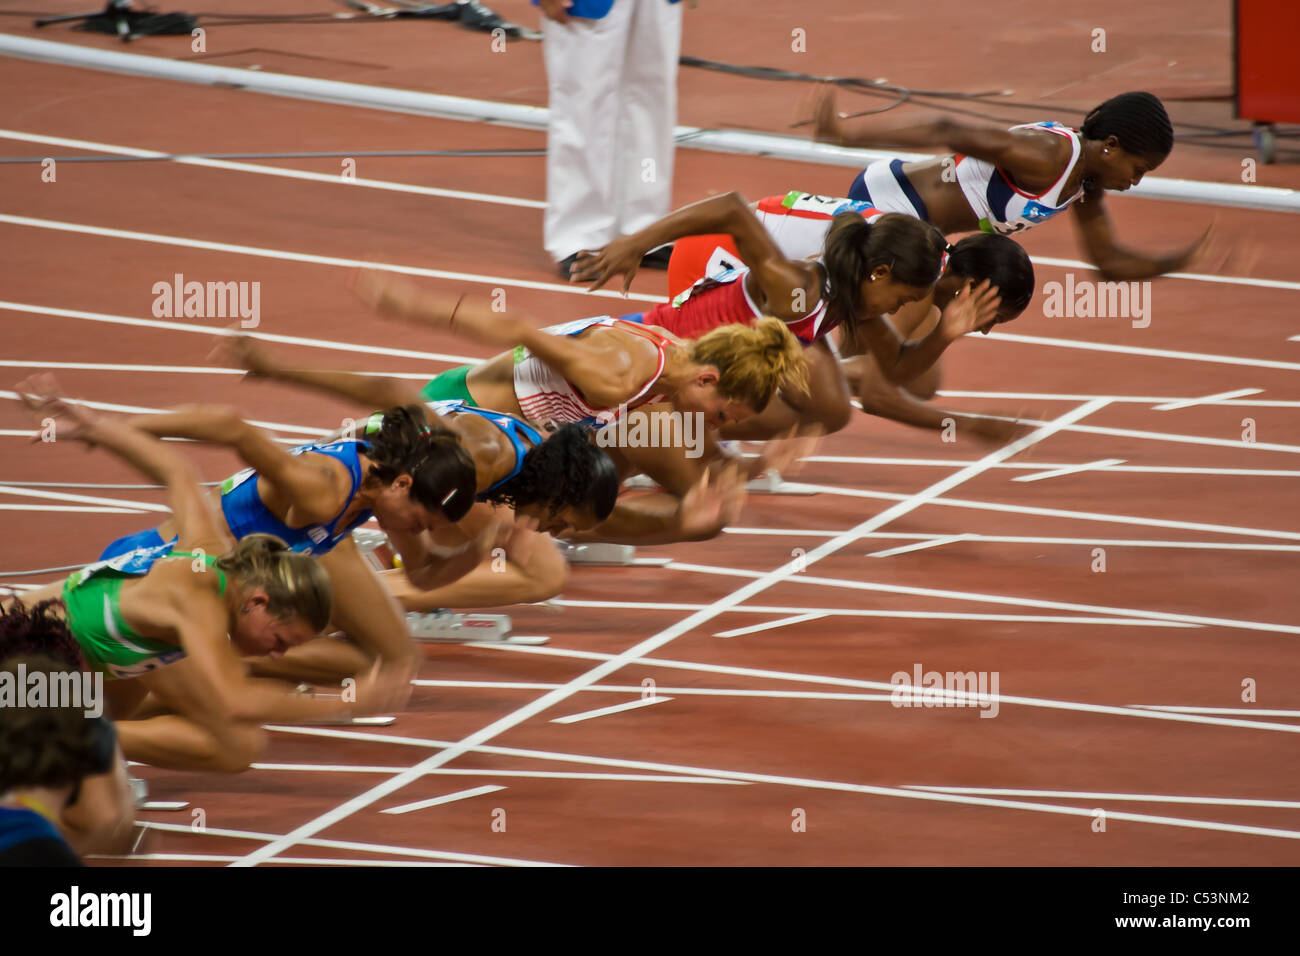 PÉKIN, CHINE : début du sprint olympique féminin du 100 mètres Banque D'Images